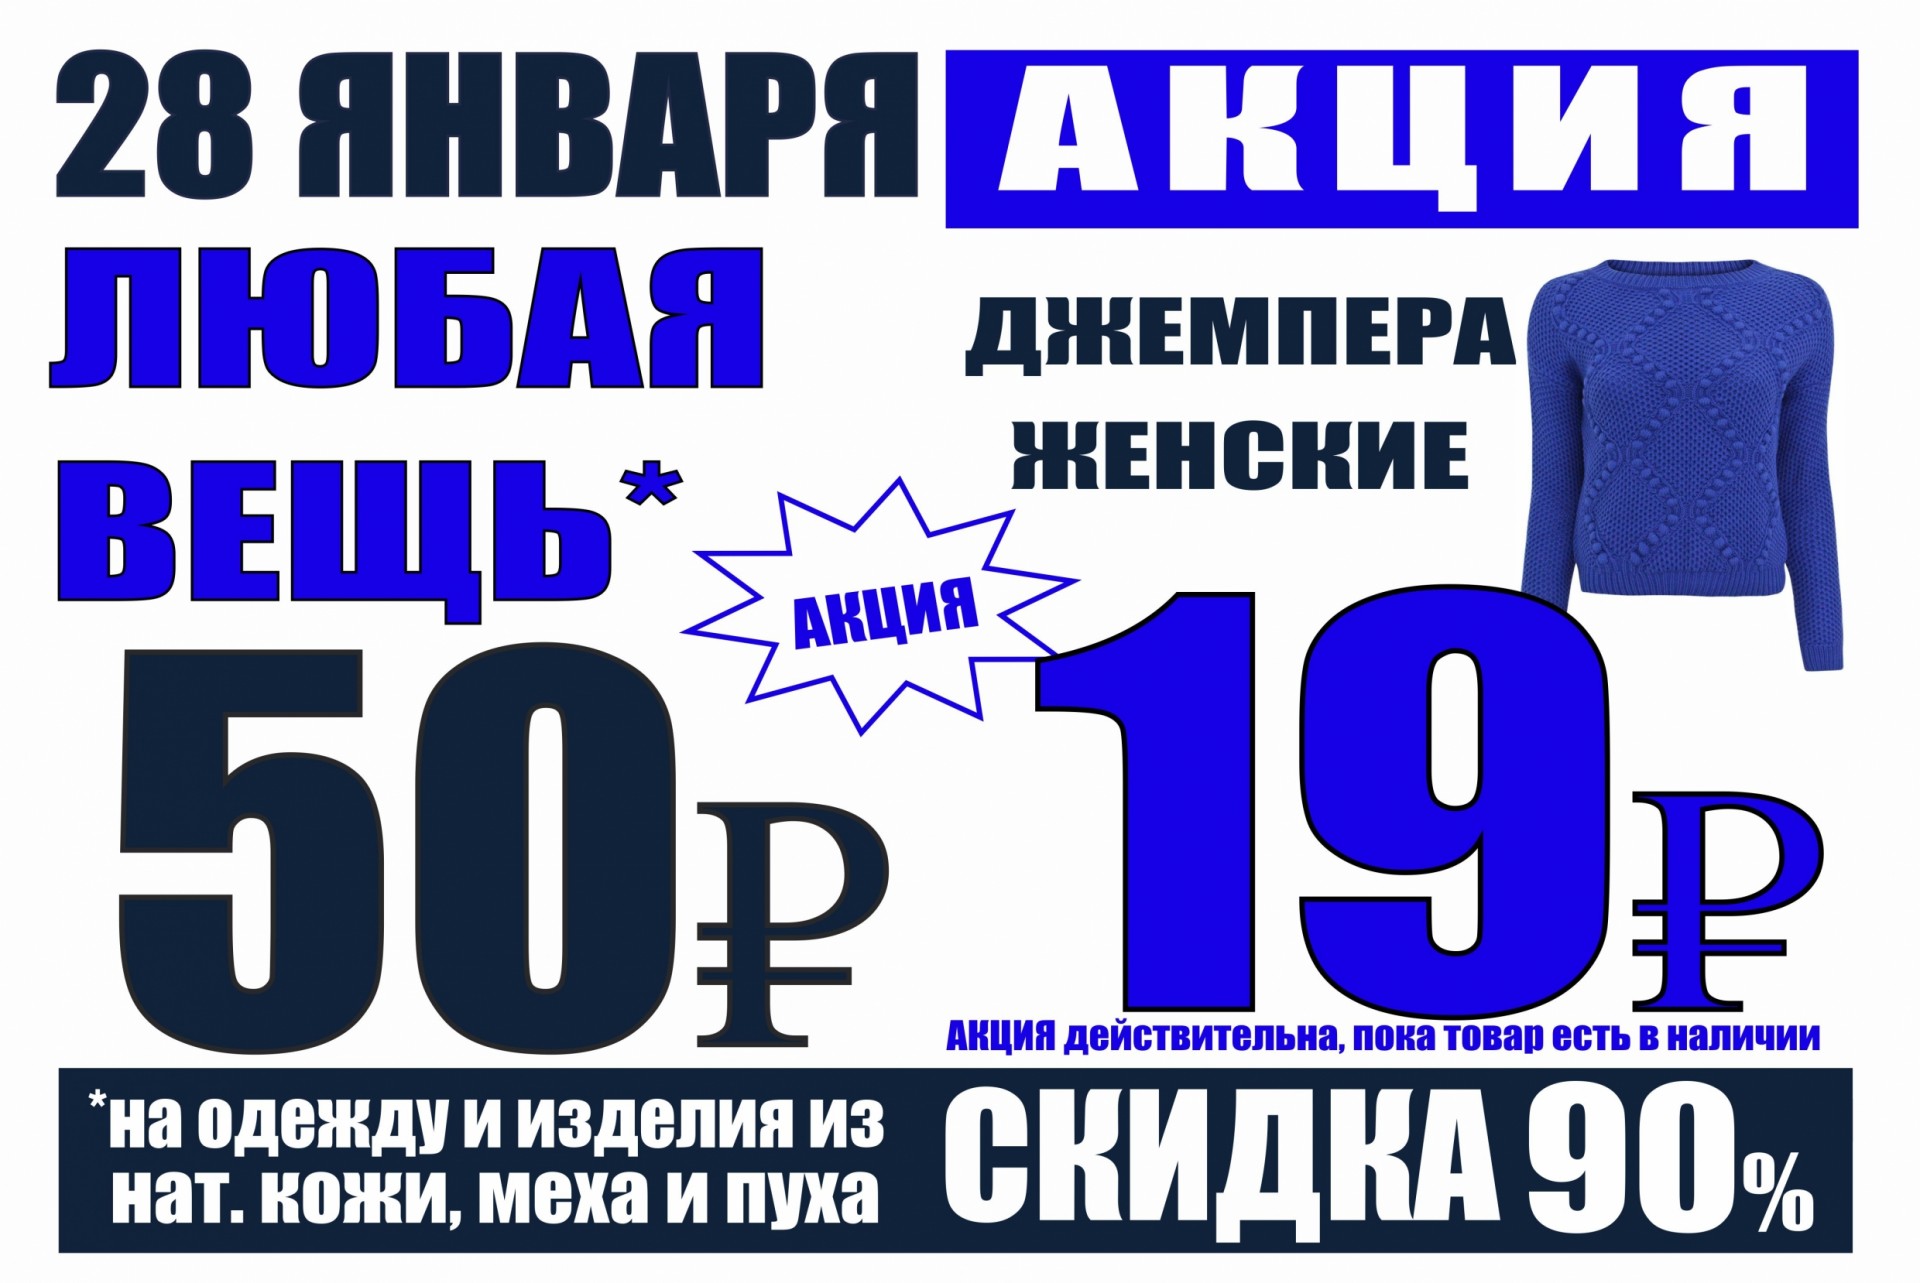 Спортивный магазин проводит акцию любая футболка по цене 300 рублей. Спортивный магазин проводит акцию любая футболка стоит 400 рублей.